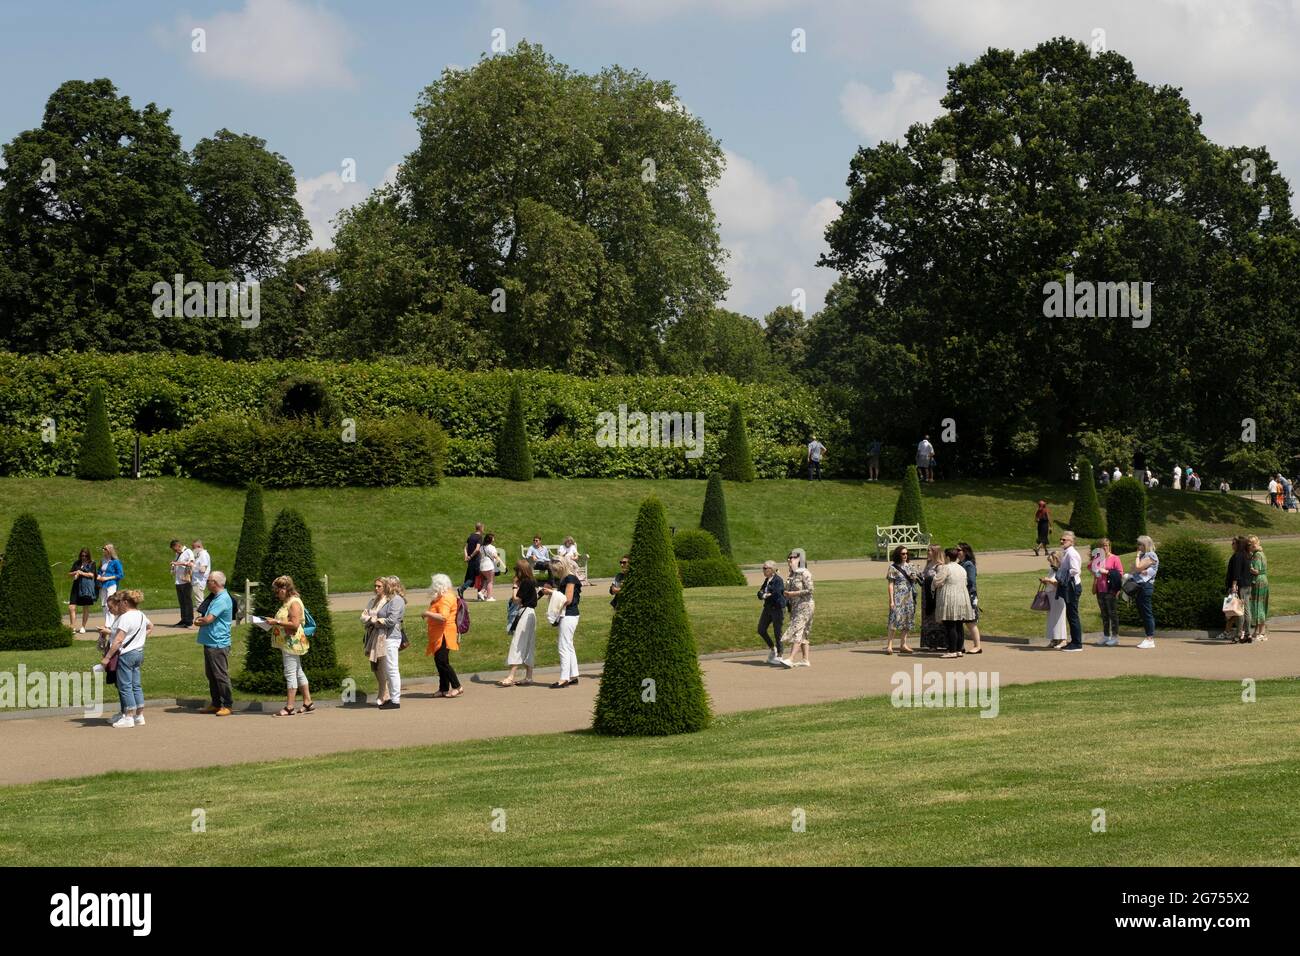 Am Tag nach dem 60. Geburtstag von Prinzessin Diana besuchen die Menschen am 2. Juli 2021 den Kensington Palace im Hyde Park in London, Großbritannien. Diana, Kensington Palace war die ehemalige Residenz der Prinzessin von Wales wurde nach ihrem tragischen Tod als die Volksprinzessin bekannt. Stockfoto